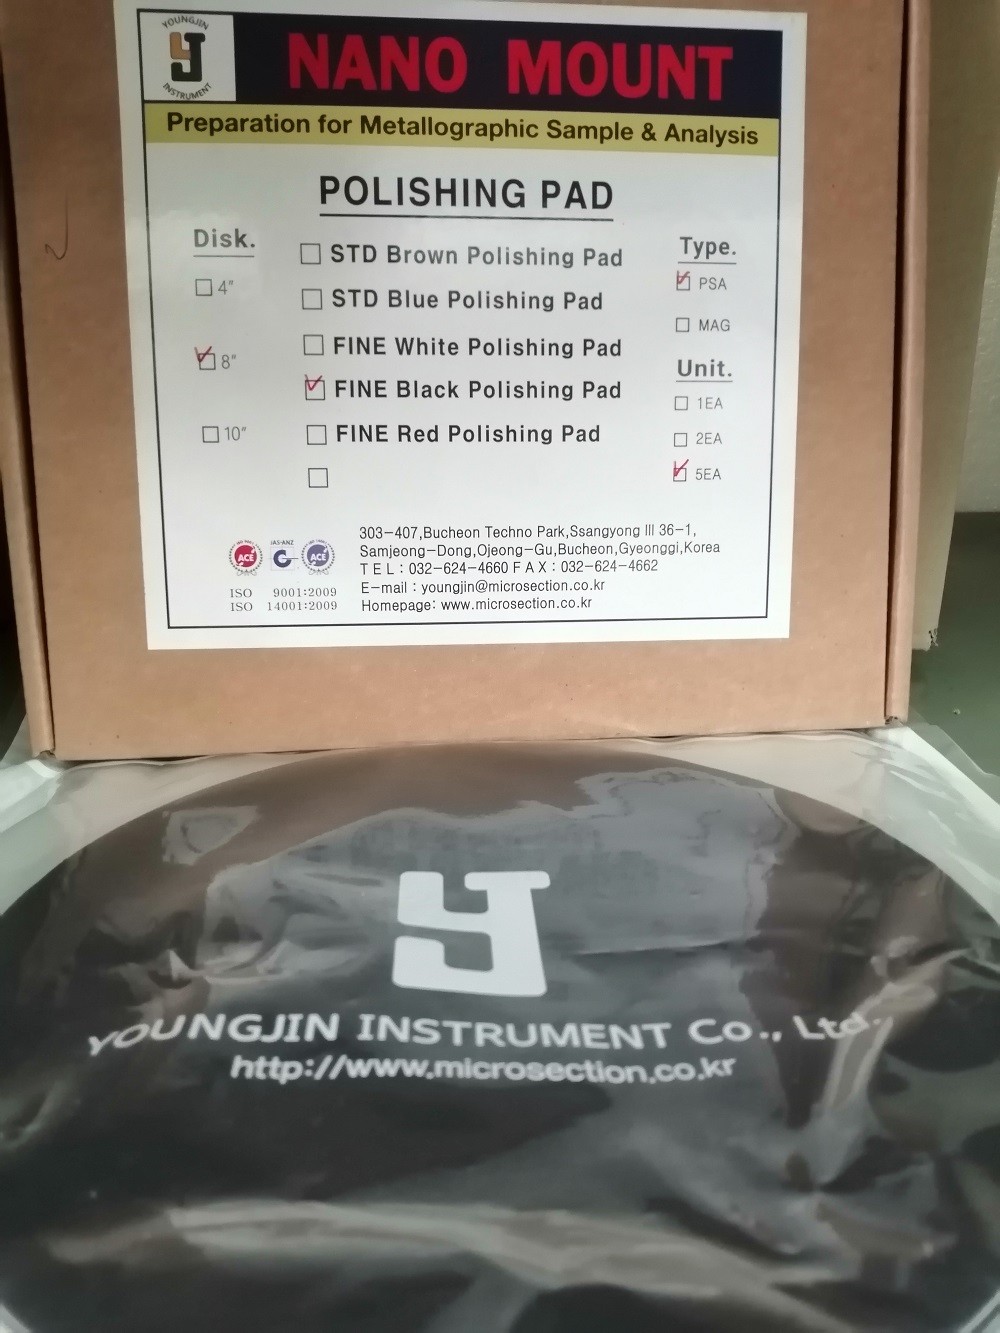 8'' Fine Black Polishing Pad (PSA), YoungJin